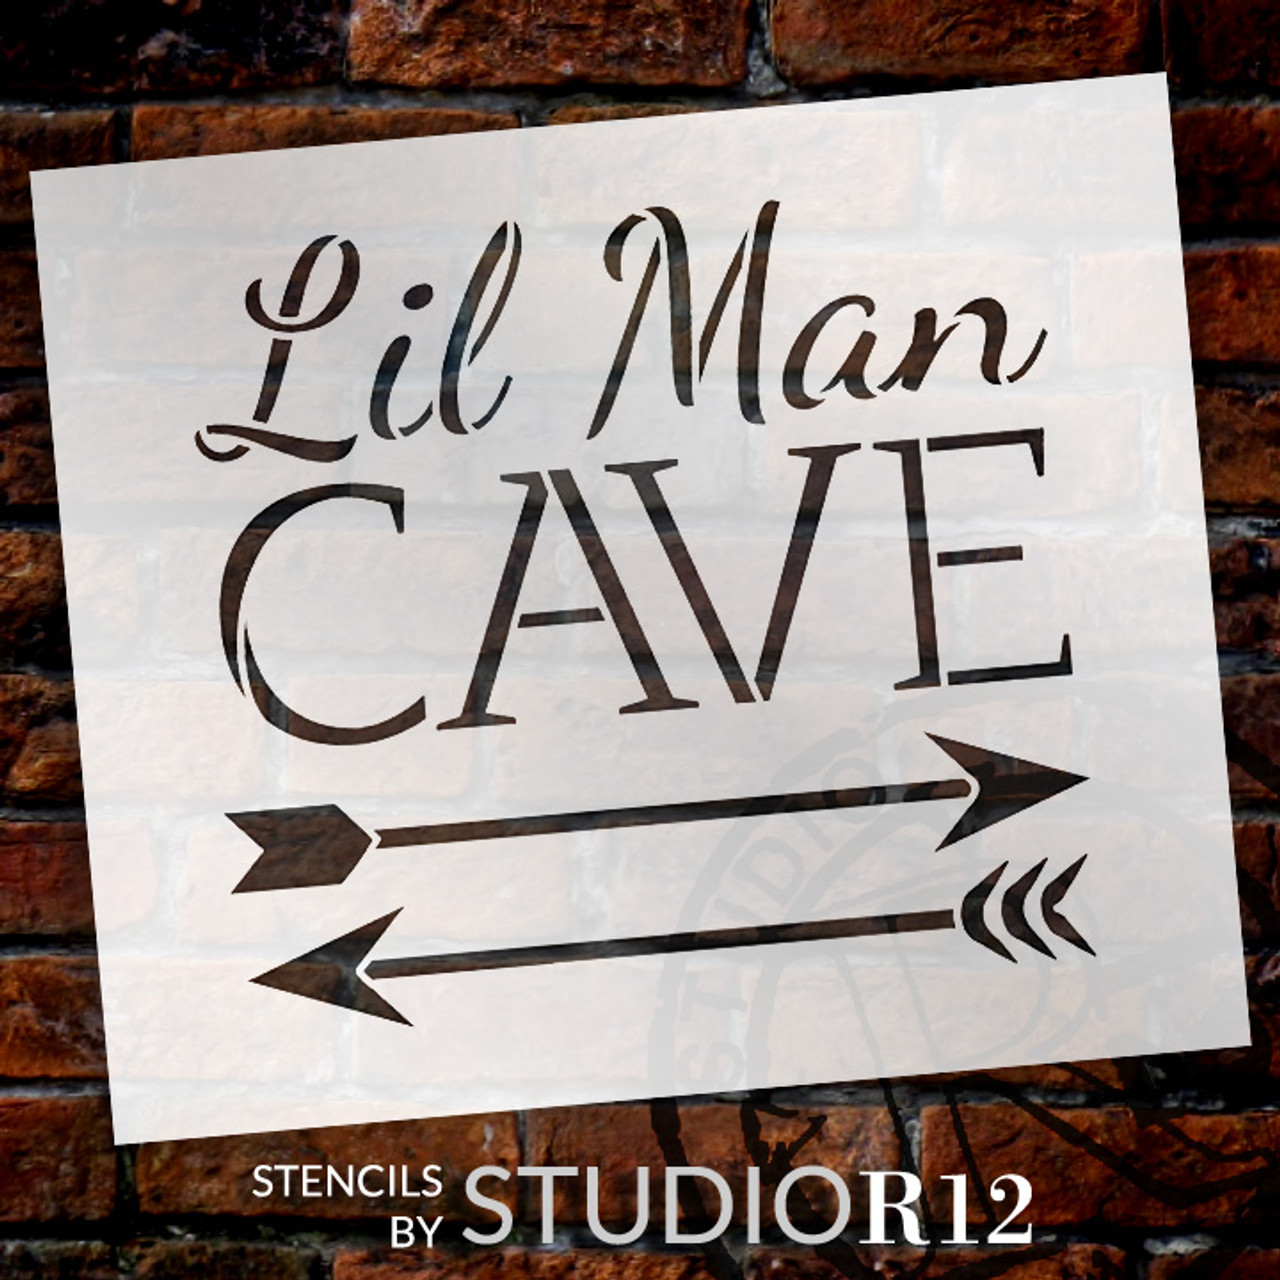 Lil Man Cave - Arrows - Word Art Stencil - 16" x 15" - STCL1838_4 - by StudioR12